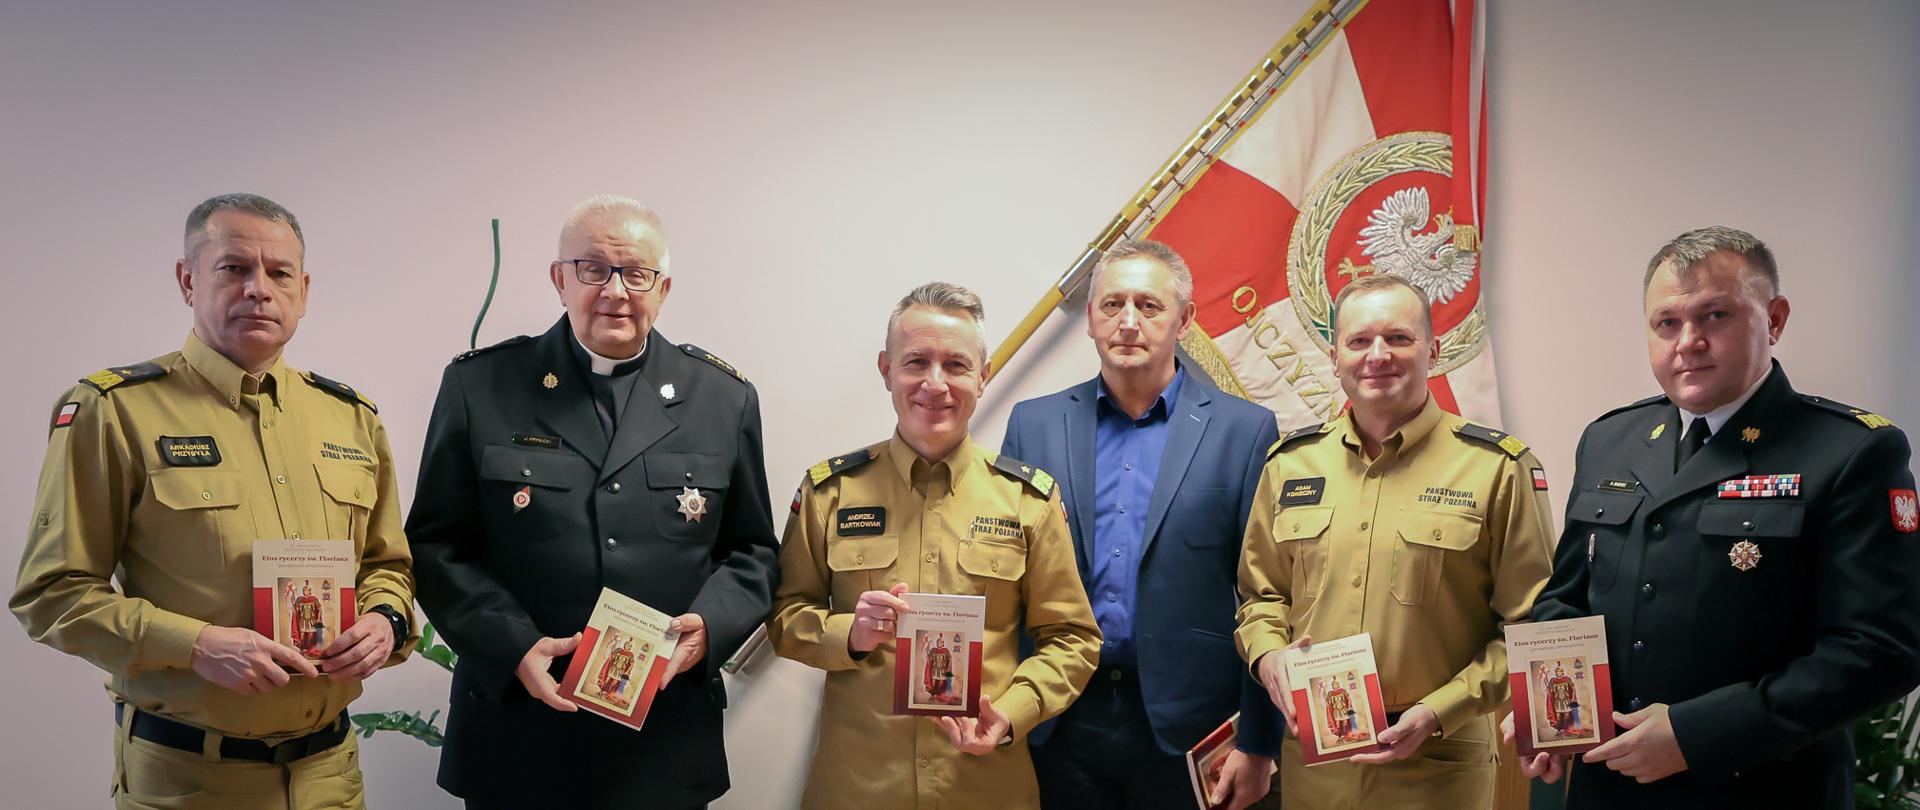 sześciu strażaków, którzy prezentują w dłoniach książkę "Etos Rycerzy św. Floriana"